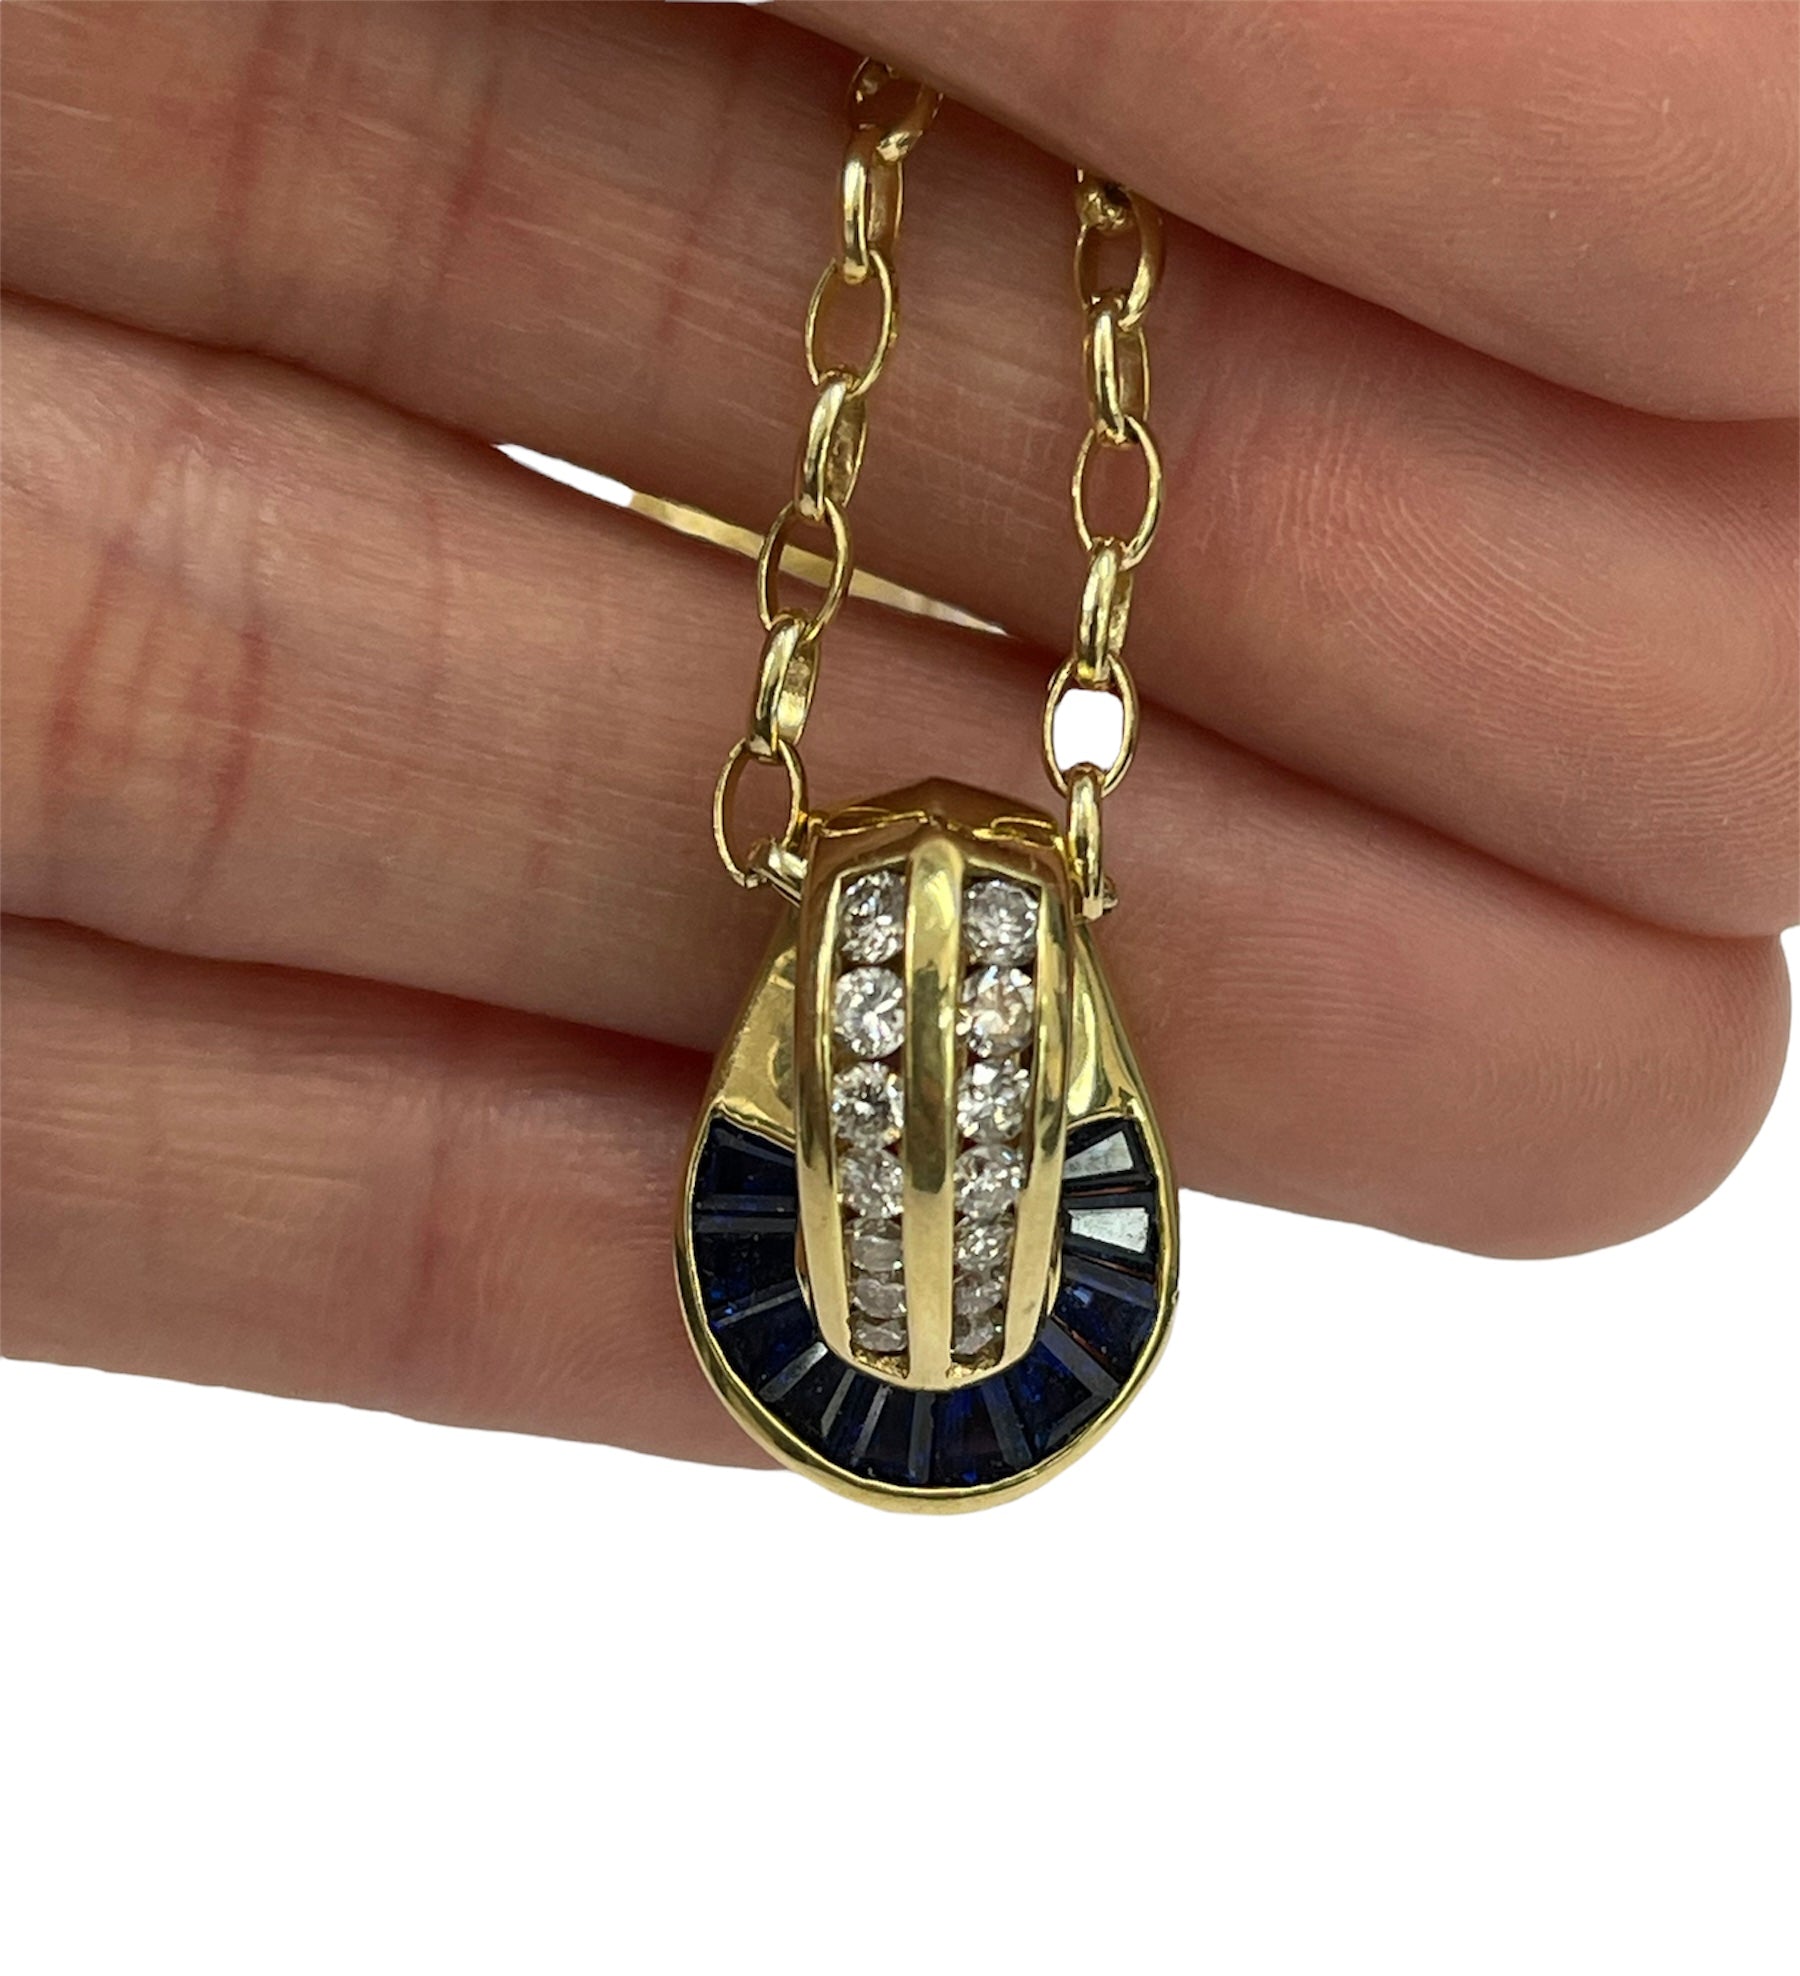 Baguettes Sapphire Gem Diamond Pendant Necklace with Chain 14kt